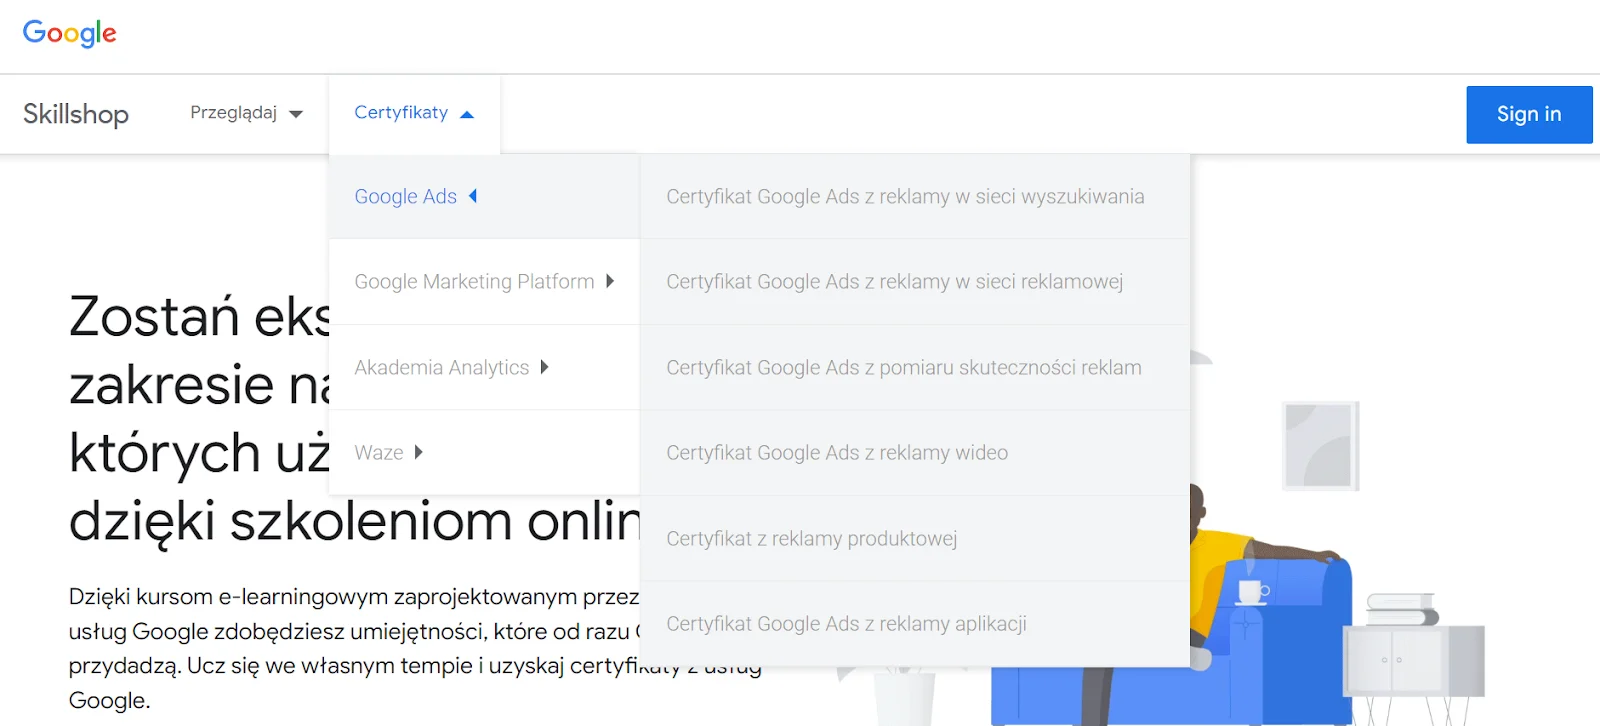 Jak zdobyć certyfikat Google Ads